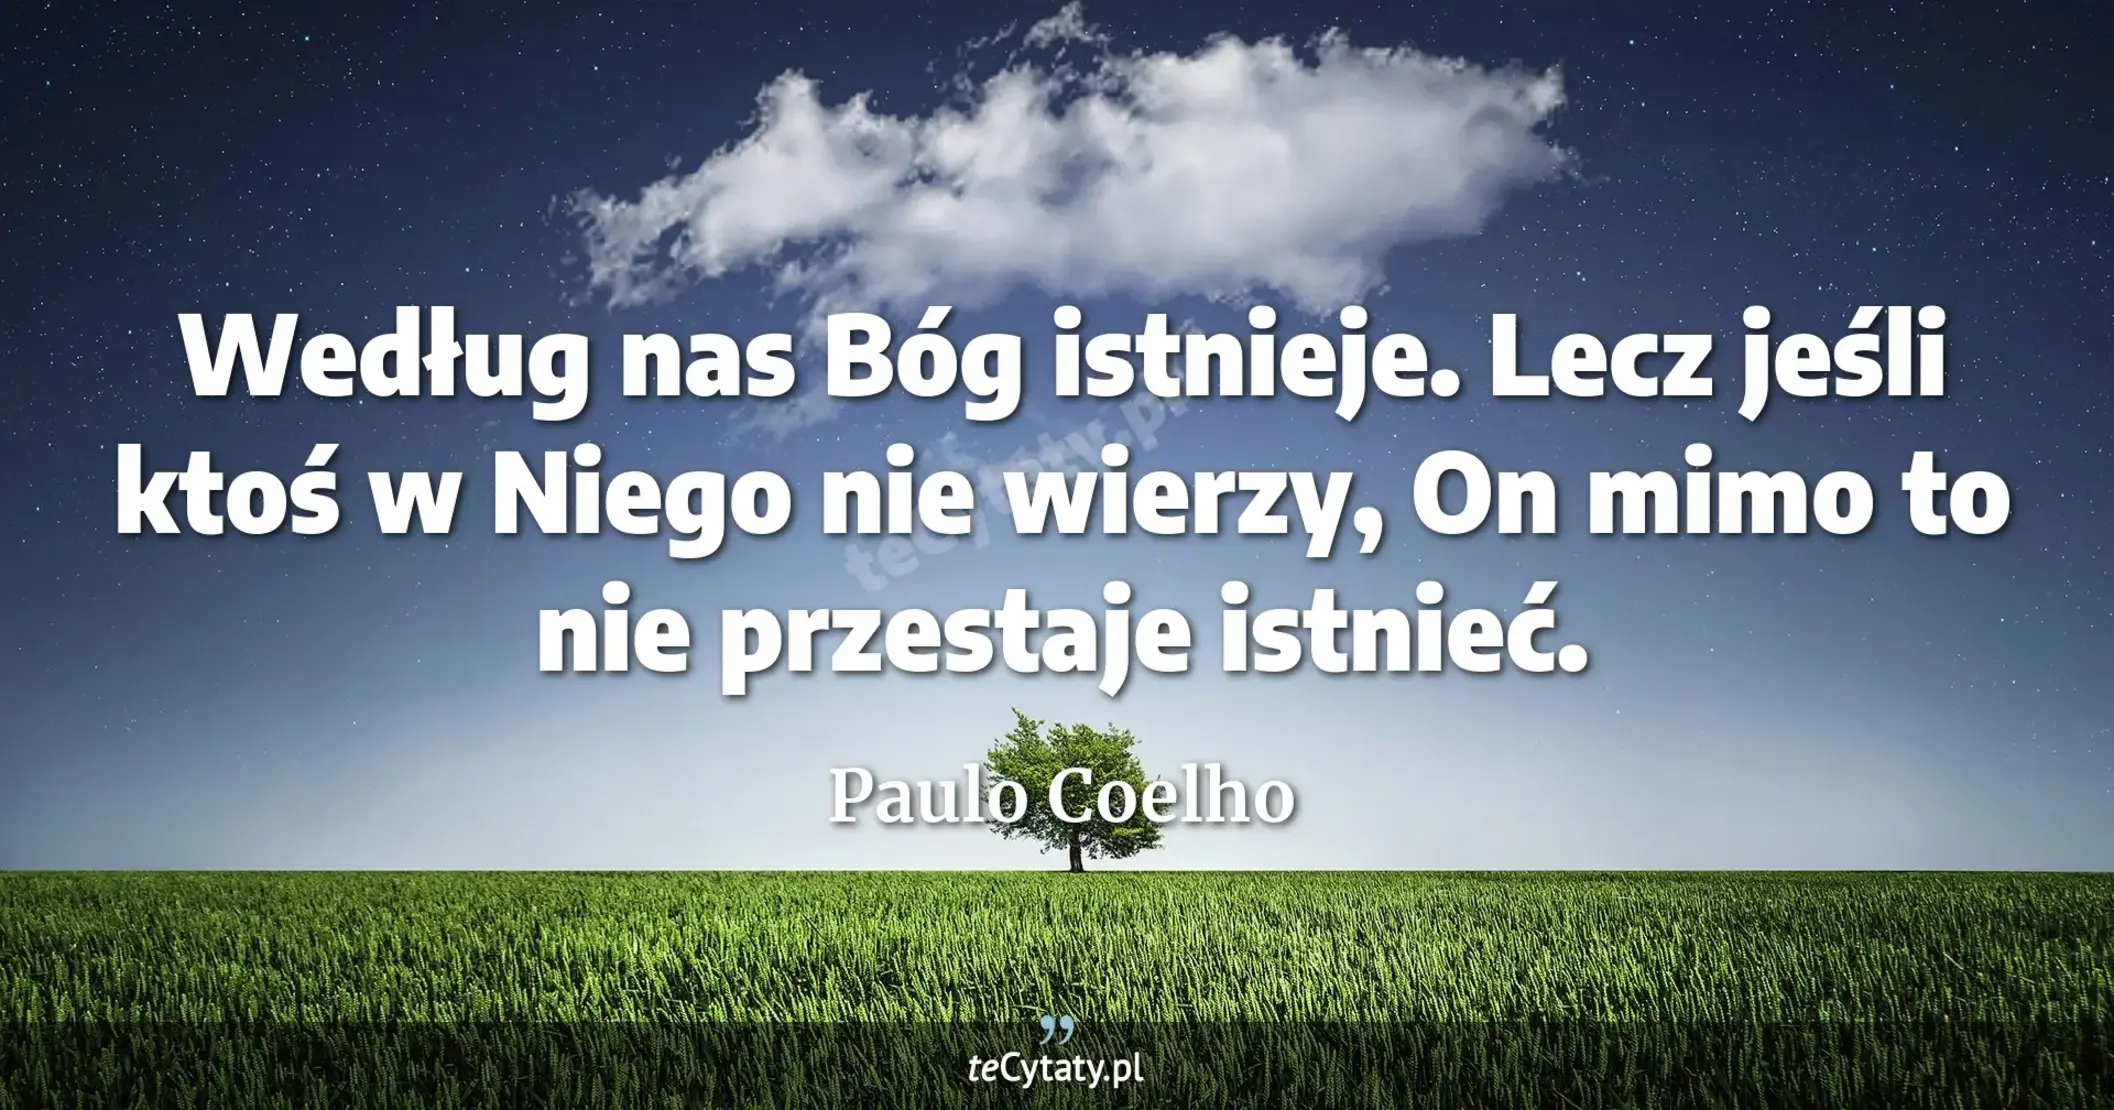 Według nas Bóg istnieje. Lecz jeśli ktoś w Niego nie wierzy, On mimo to nie przestaje istnieć. - Paulo Coelho